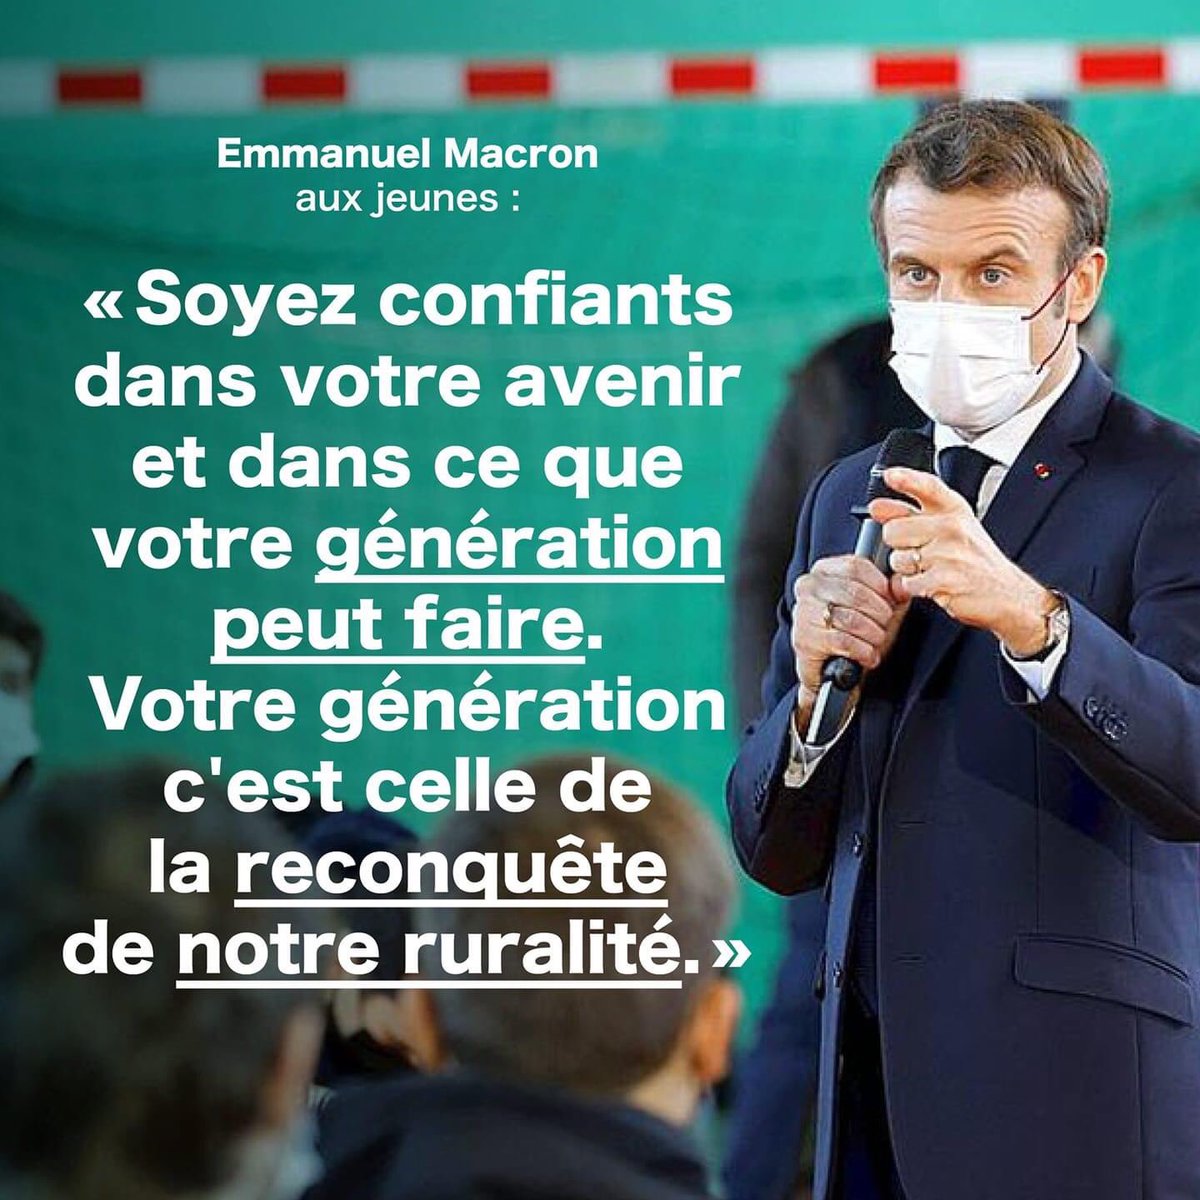 Notre génération est celle de la reconquête de notre #ruralité #jeunesse #ensemblecitoyens #Macron2022 #économieverte #responsabilité